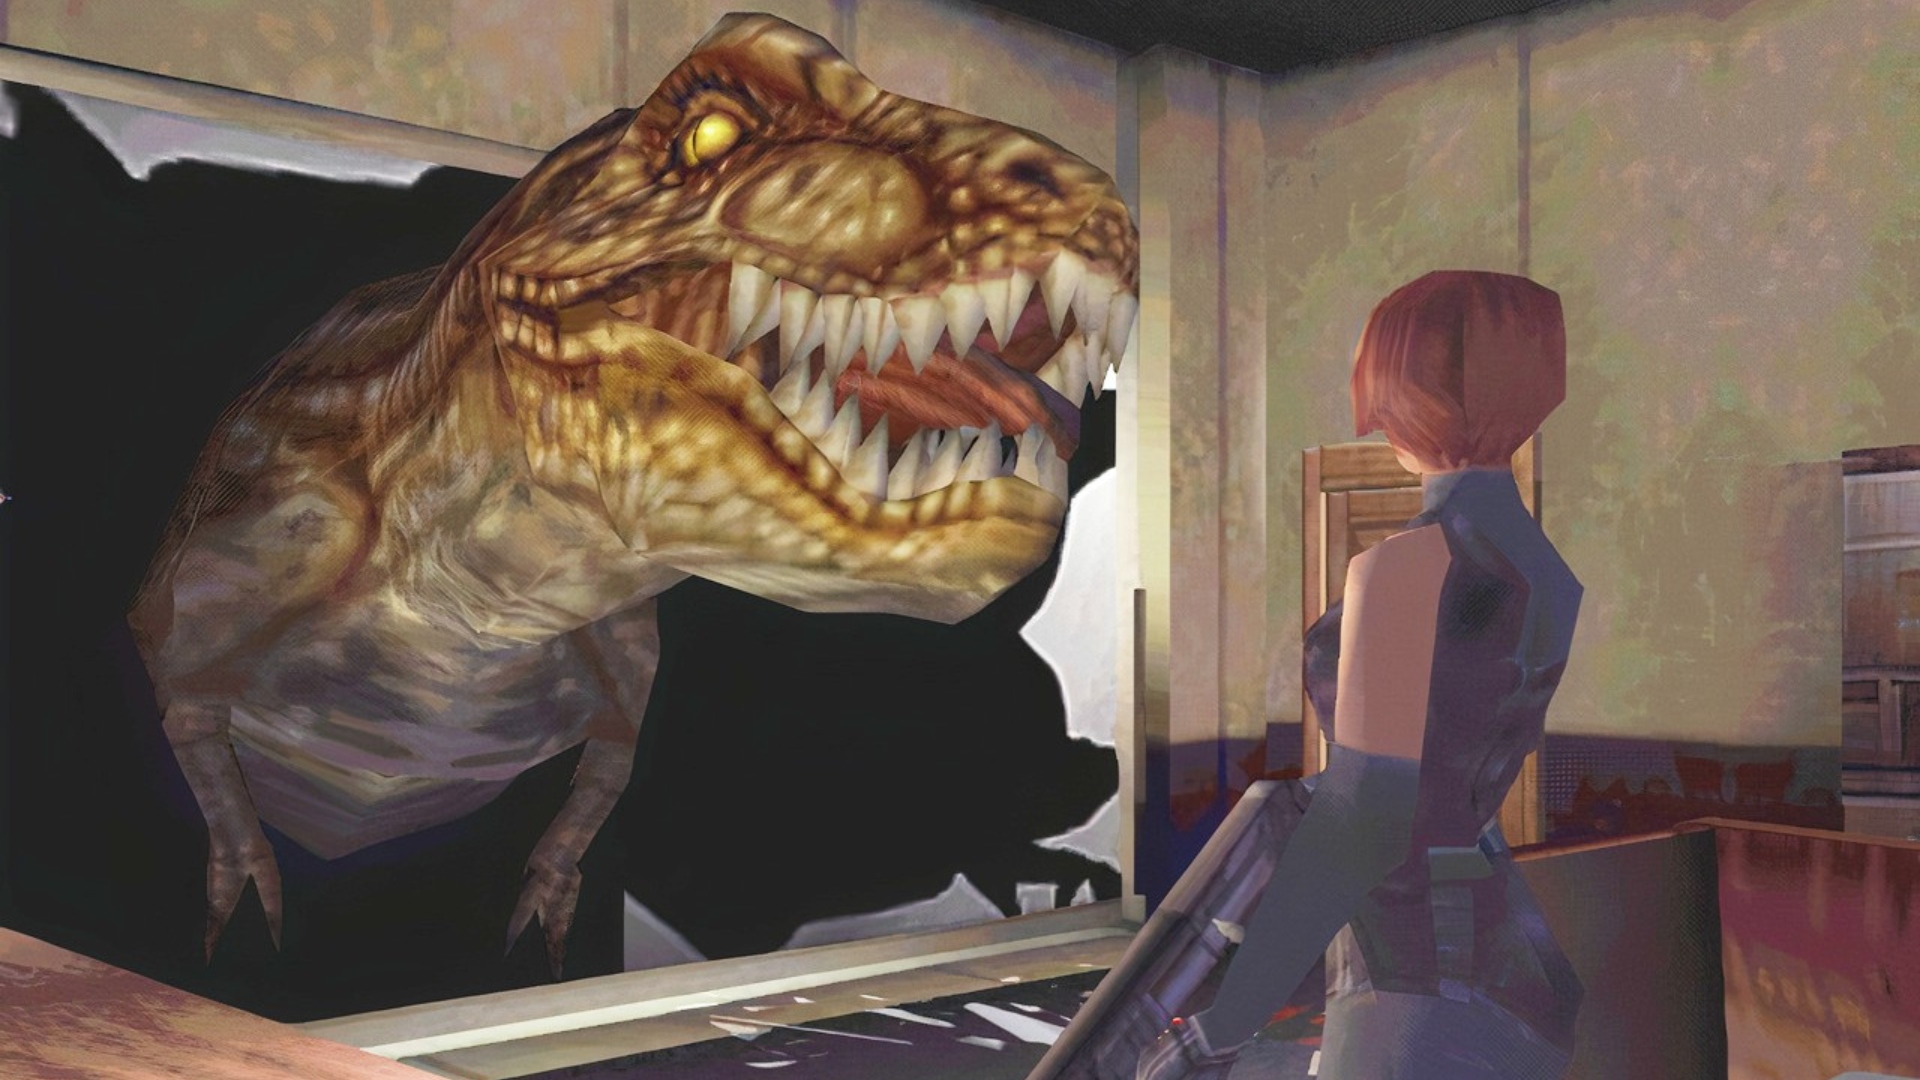 Capcom diz que Exoprimal não tem relação com Dino Crisis